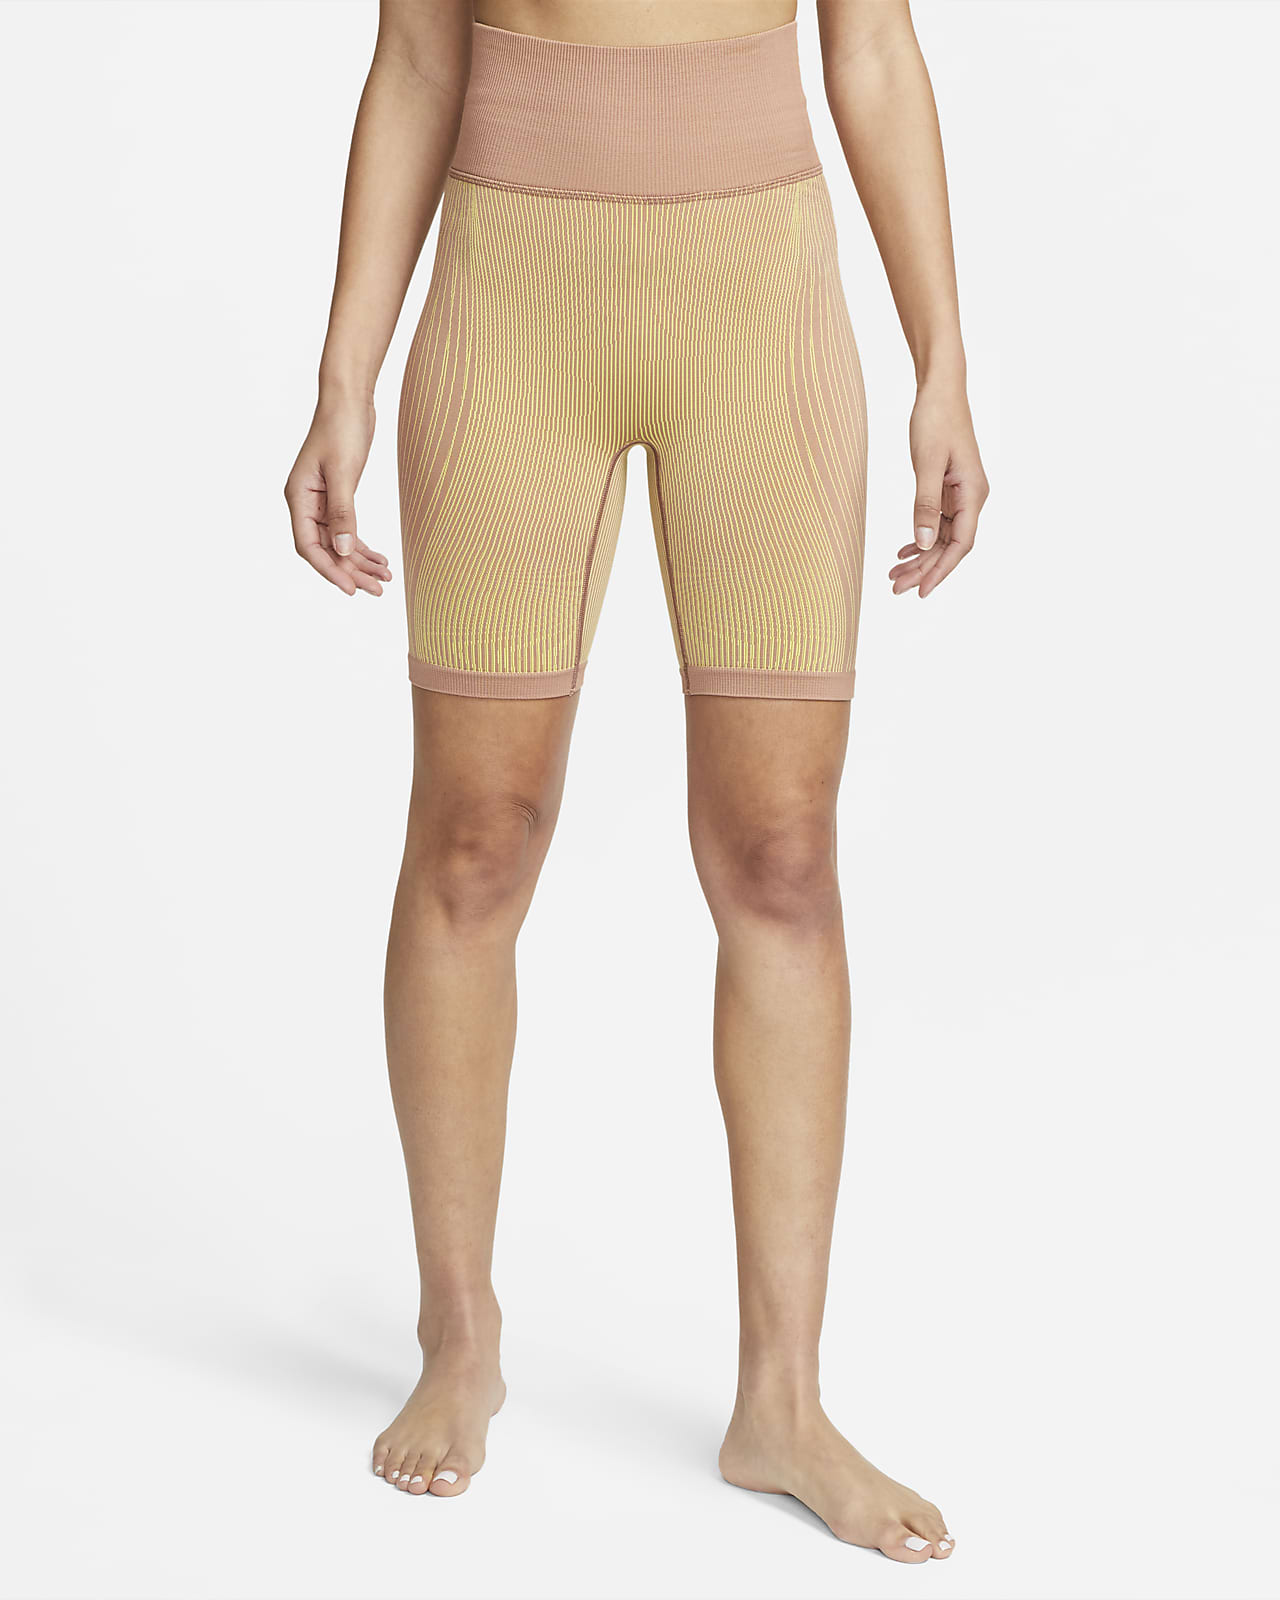 Nike Yoga Dri-FIT ADV Pantalons de 18 cm amb cintura alta - Dona